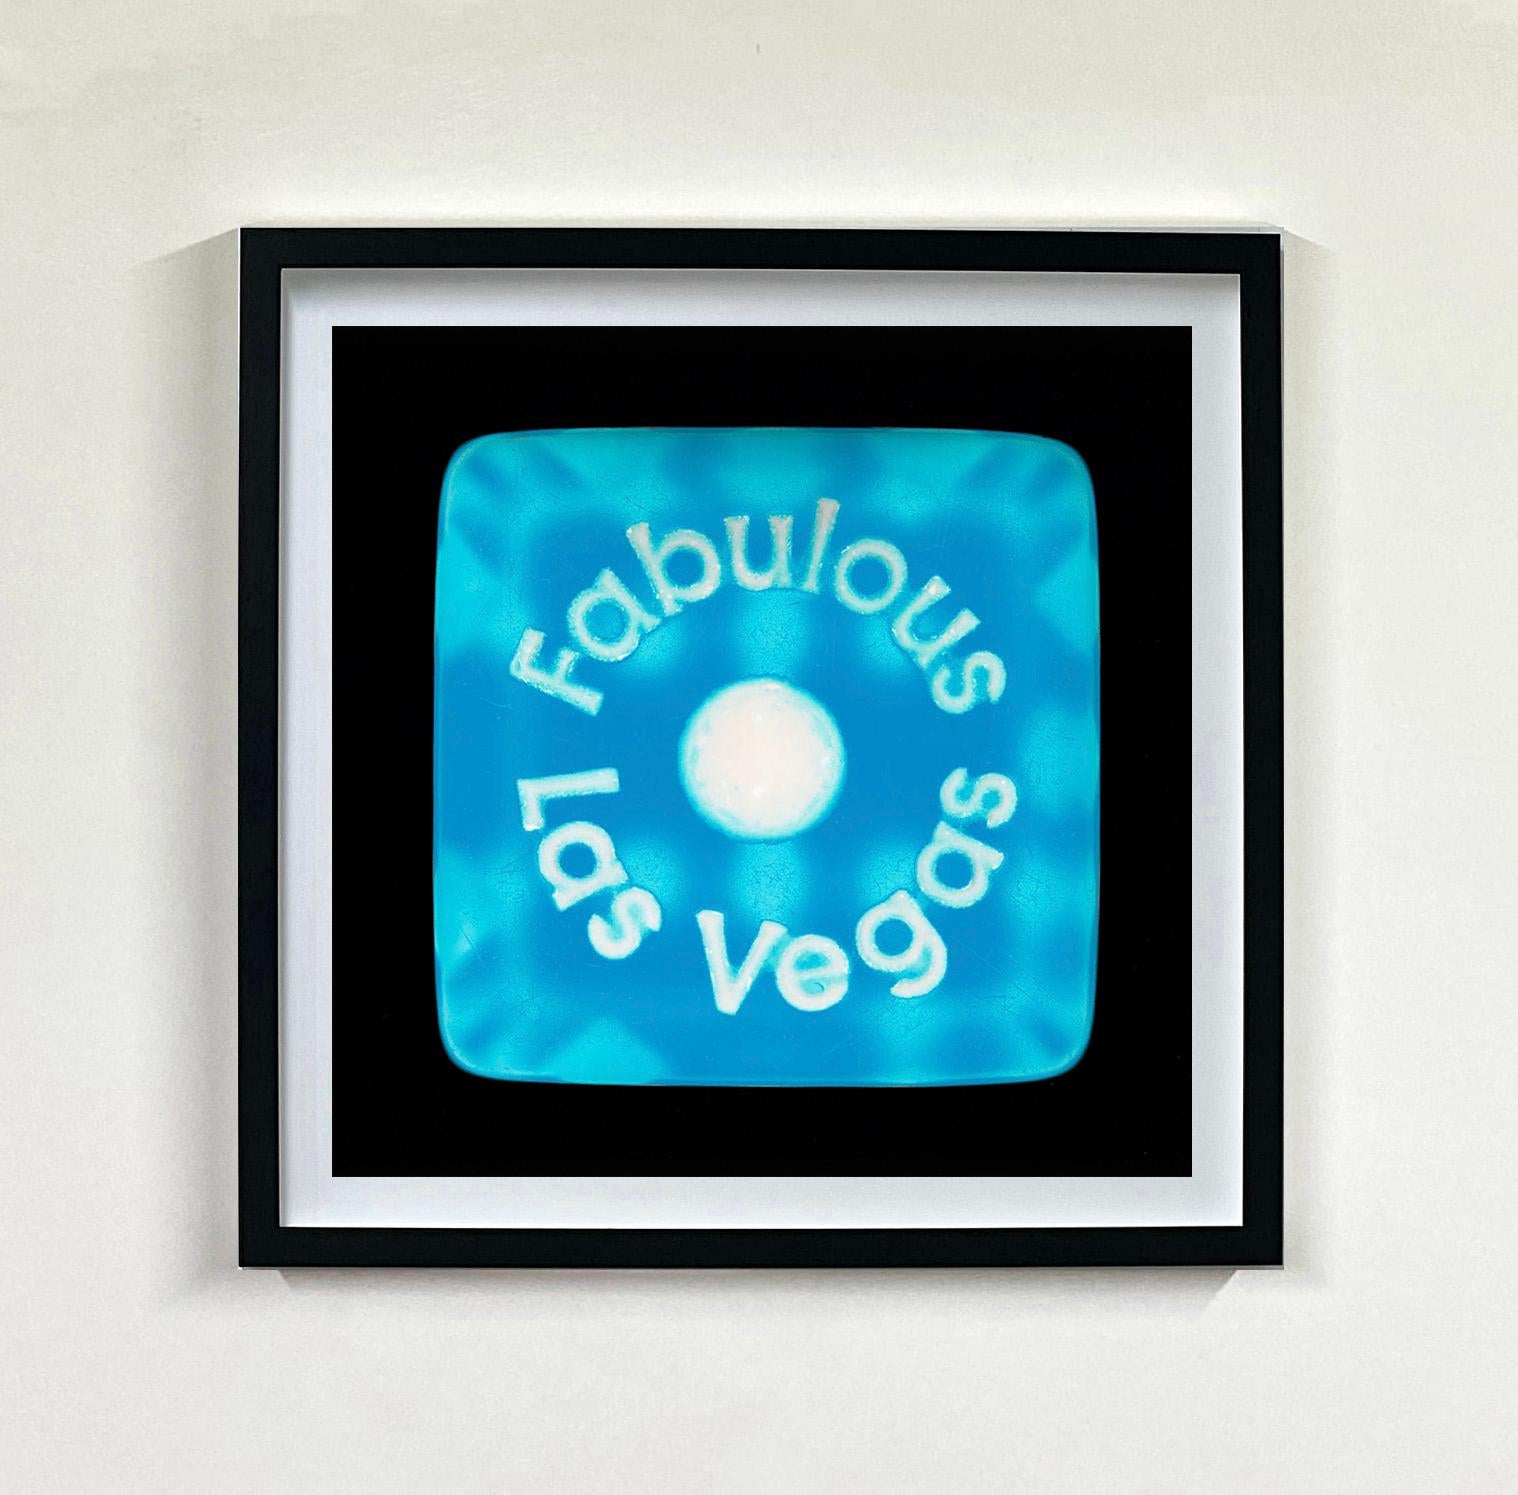 Dice-Serie, Ein fabelhaftes Las Vegas – Konzeptuelle Farbfotografie (Pop-Art), Photograph, von Heidler & Heeps